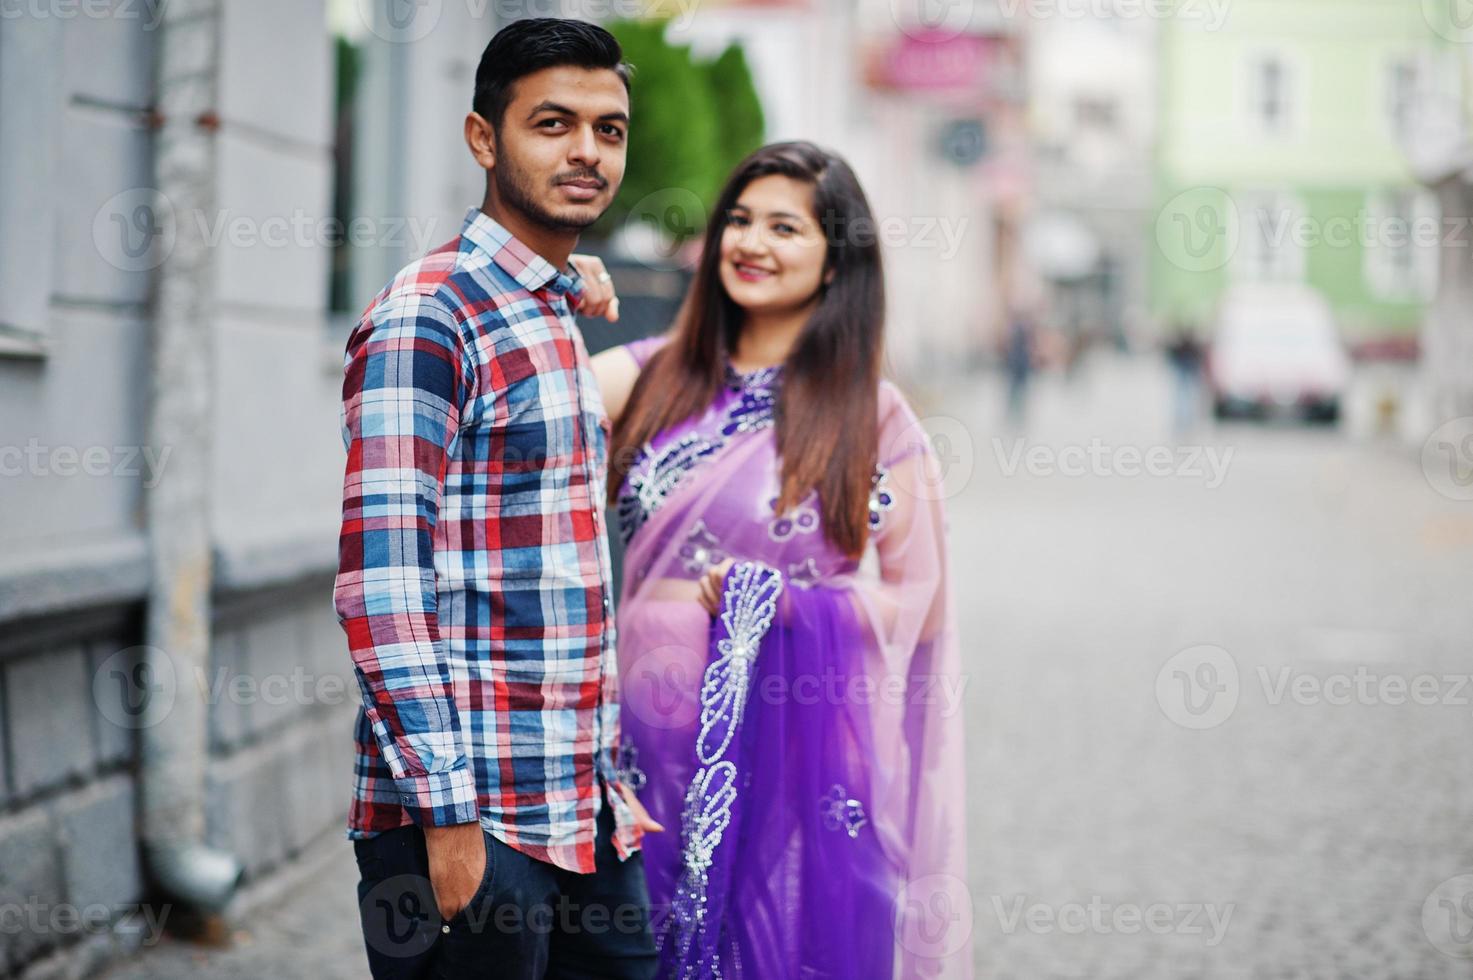 coppia indù indiana alla moda poste sulla strada. foto